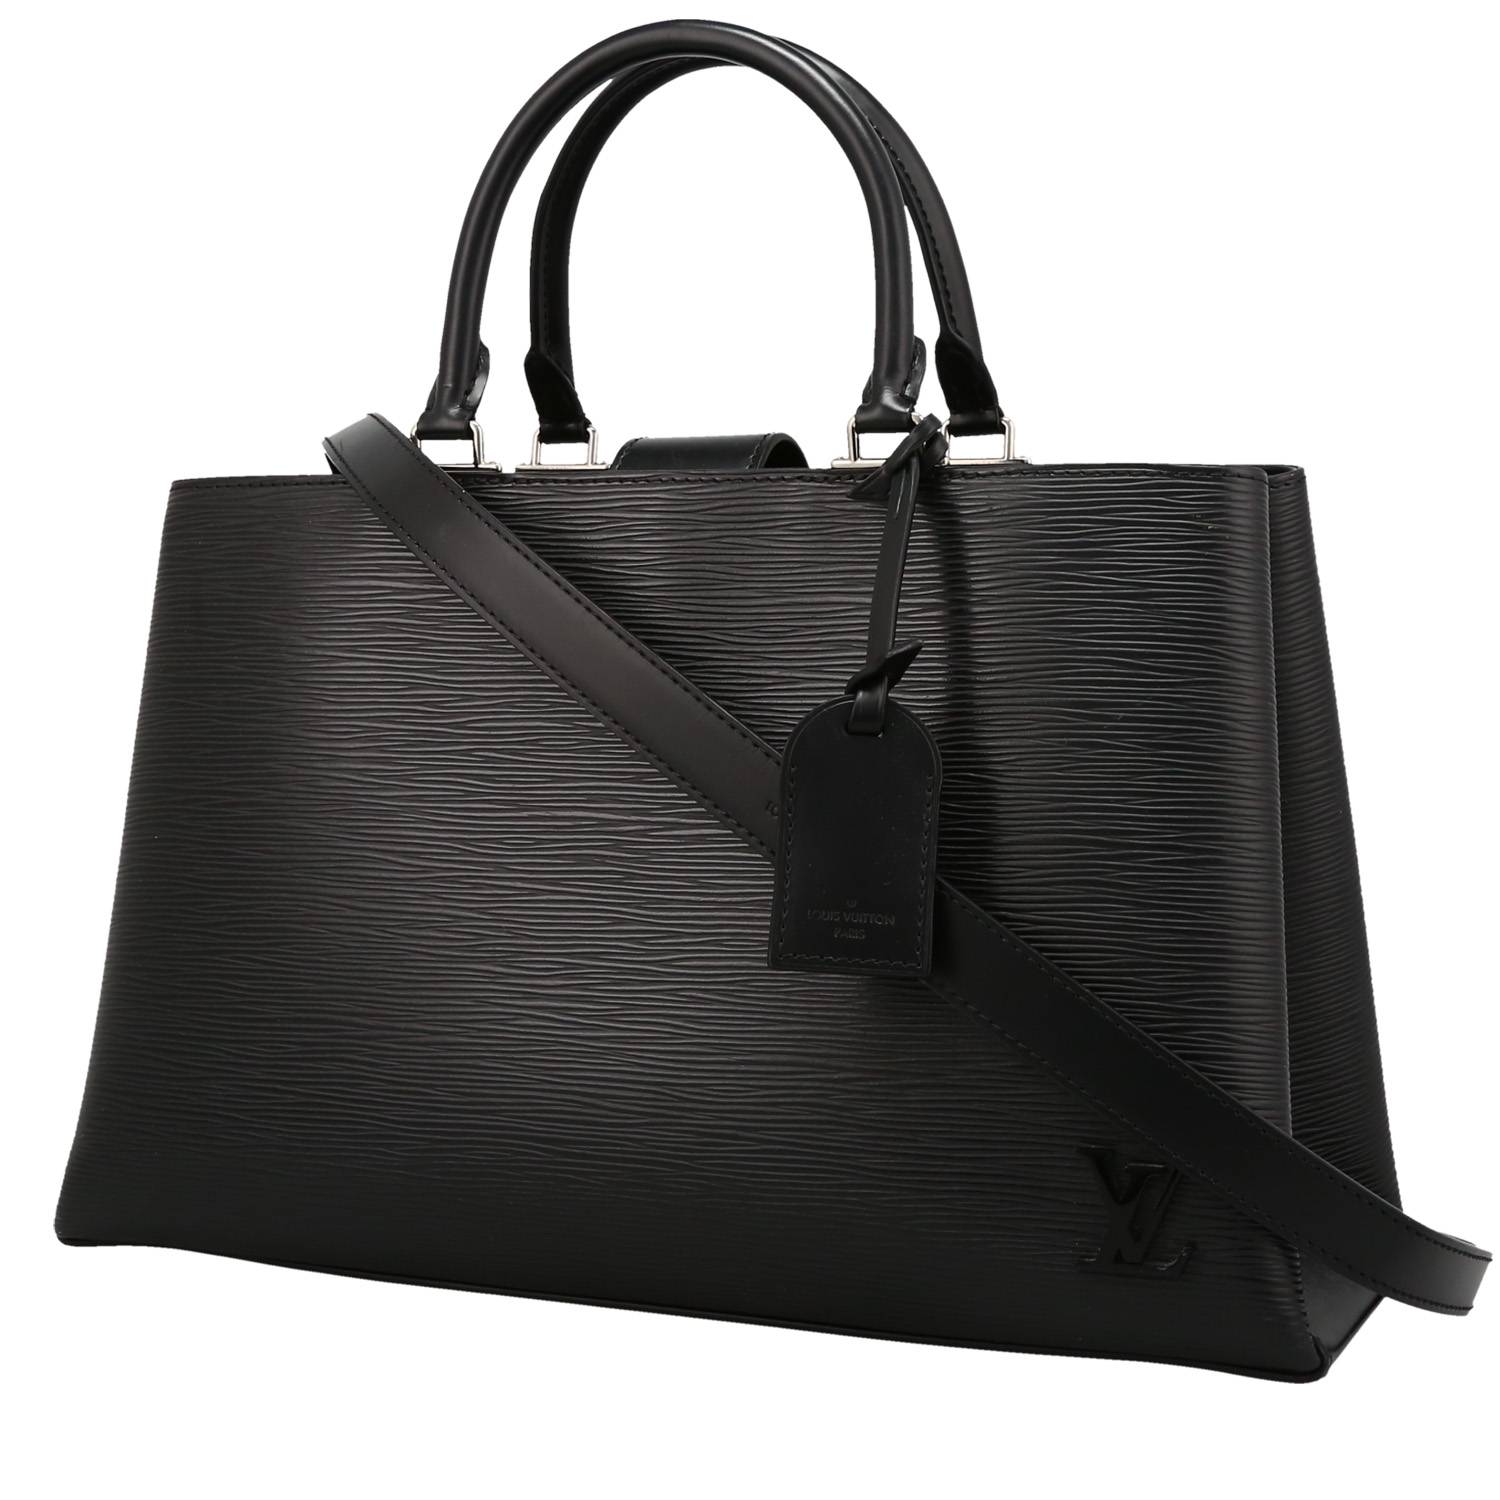 Louis Vuitton Kleber Handbag